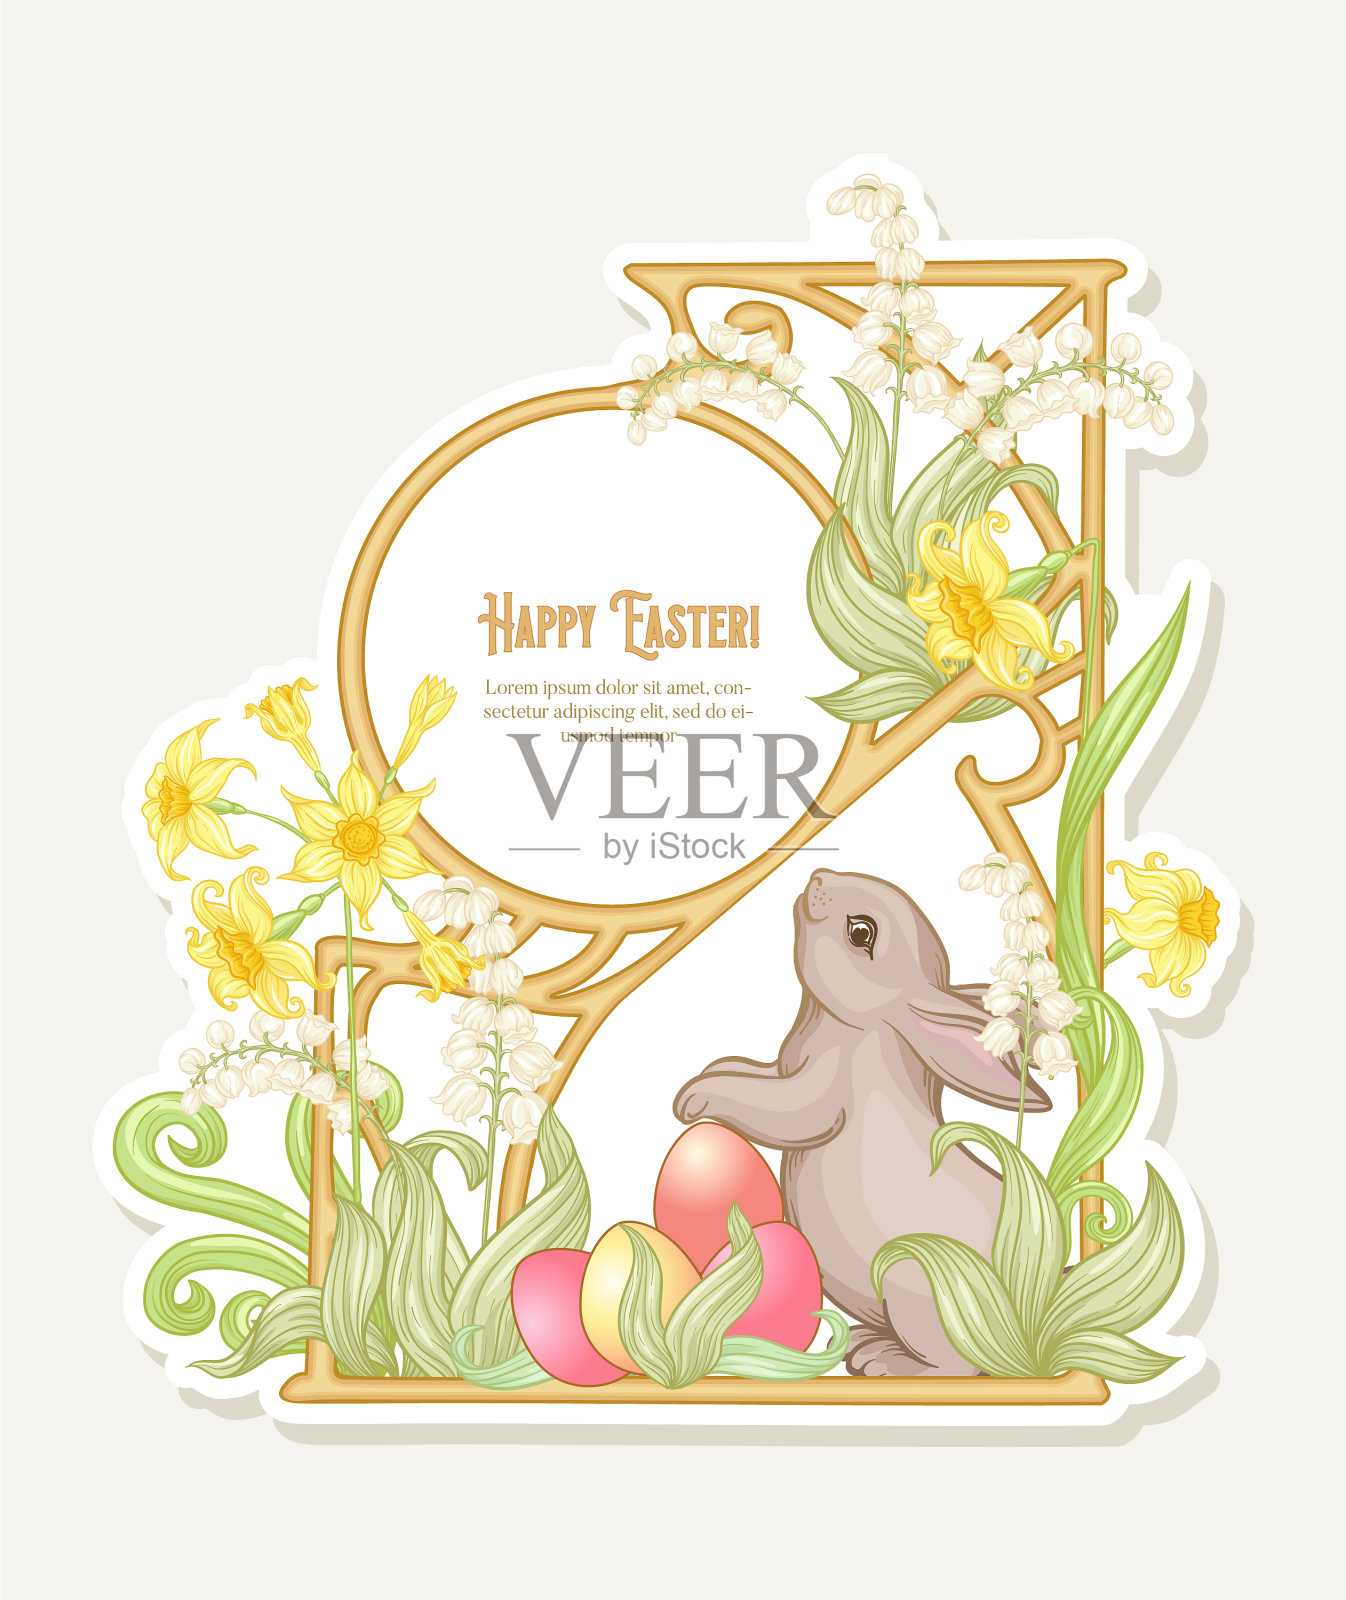 复活节快乐模板明信片海报与一只兔子插画图片素材